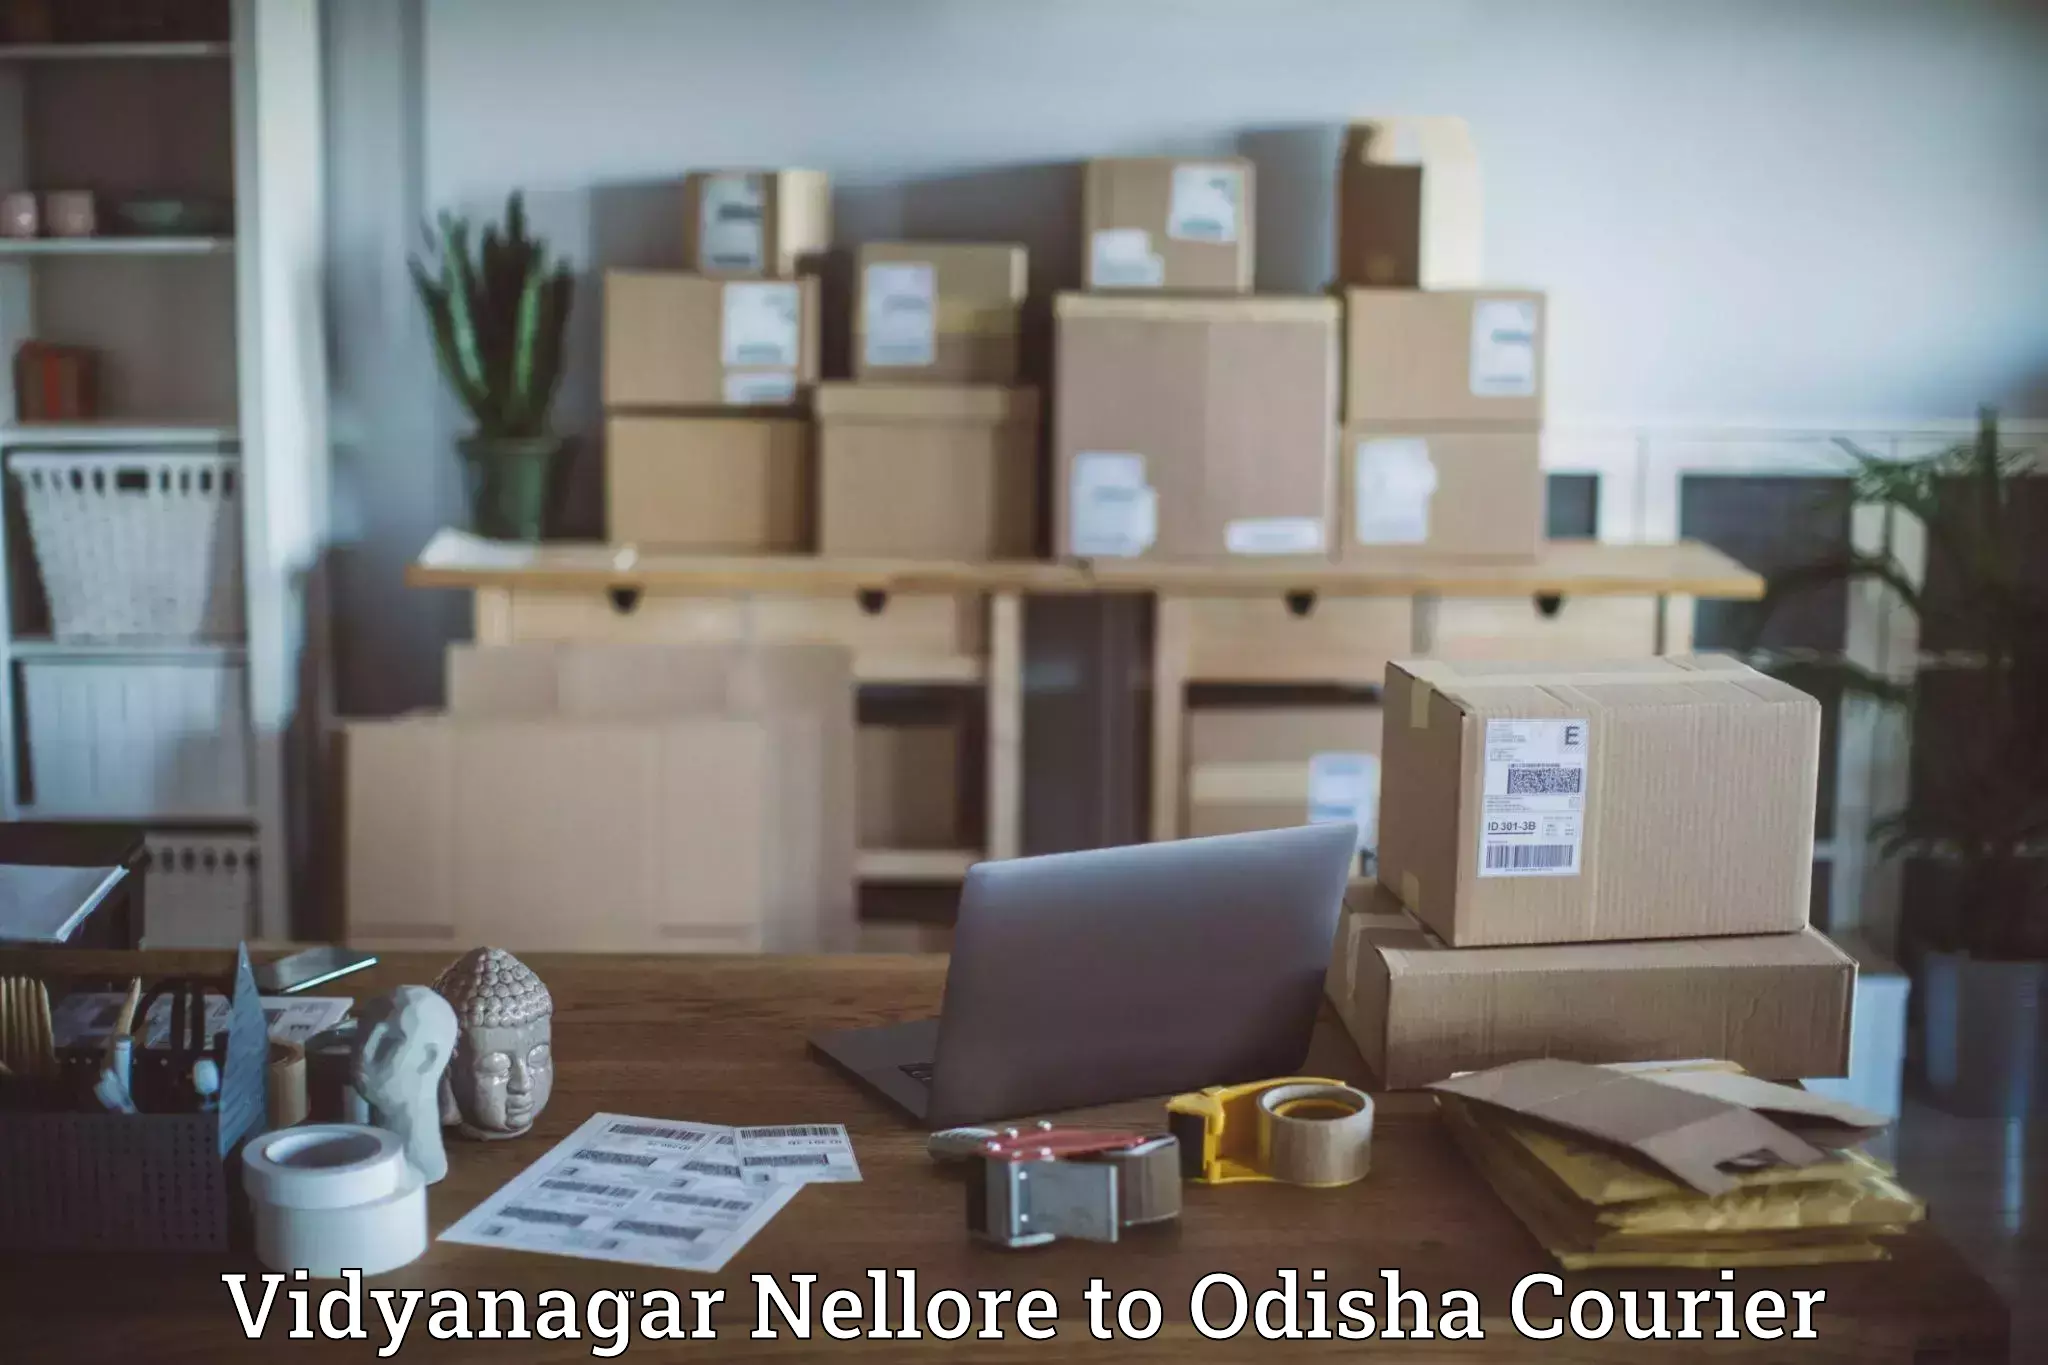 Sustainable delivery practices Vidyanagar Nellore to Nuapada